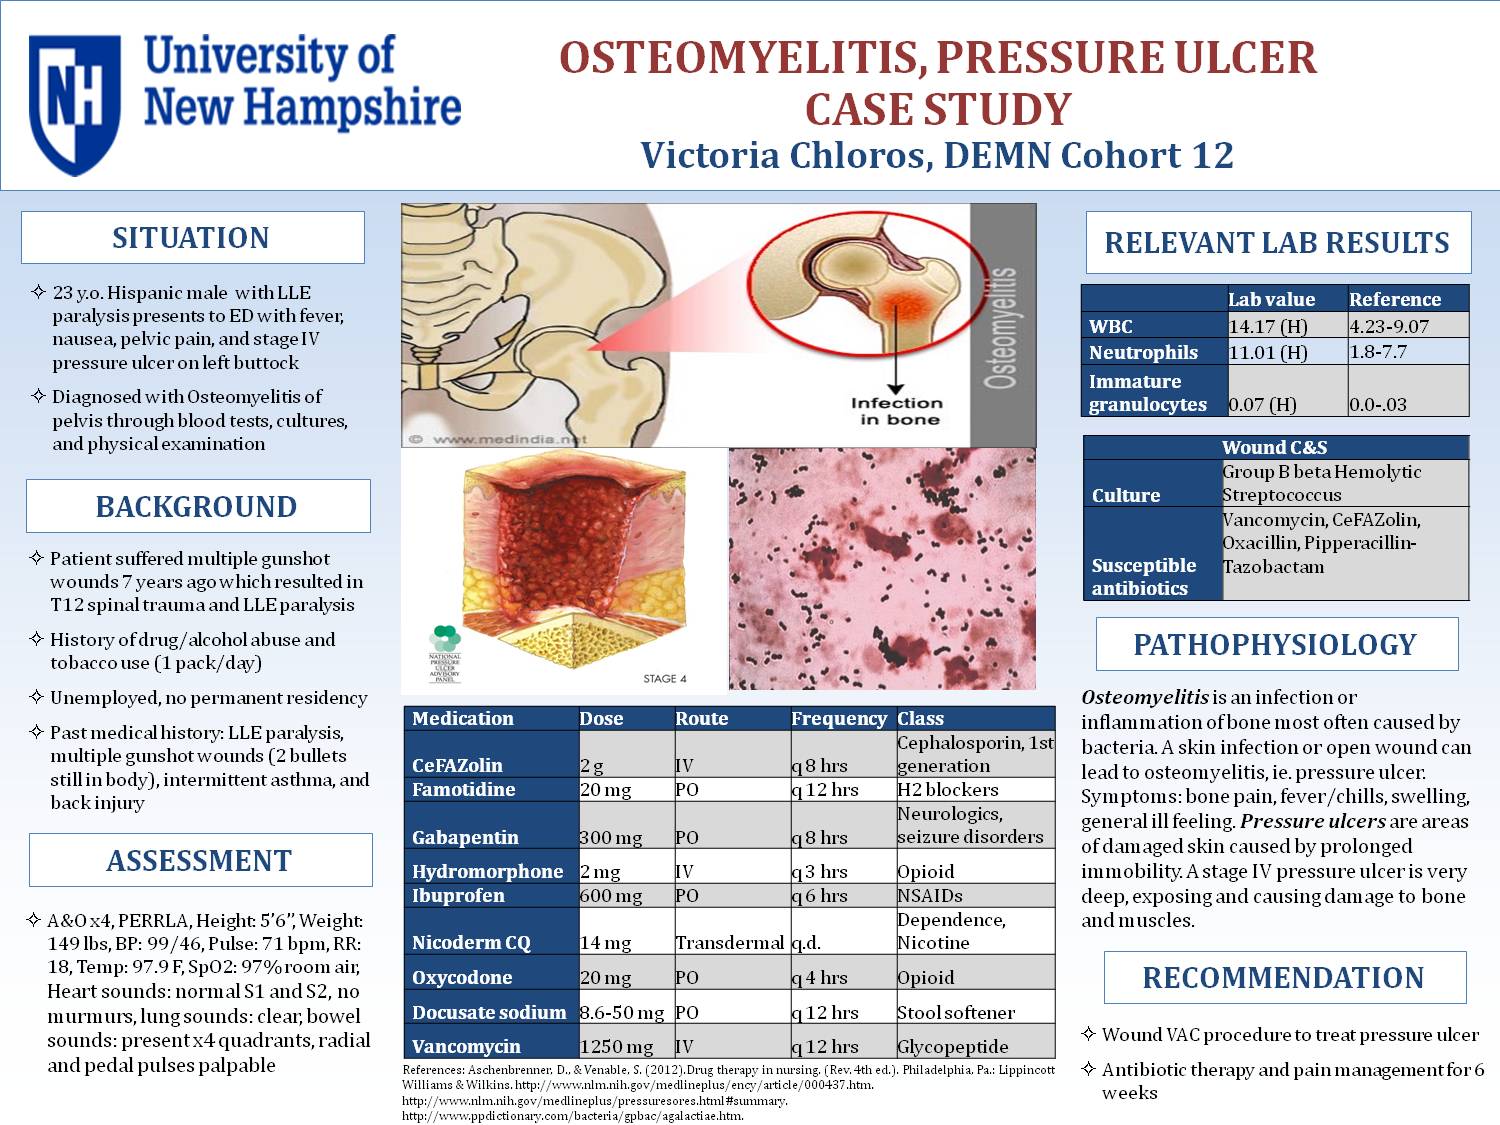 Osteomyelitis, Pressure Ulcer Case Study by vchloros